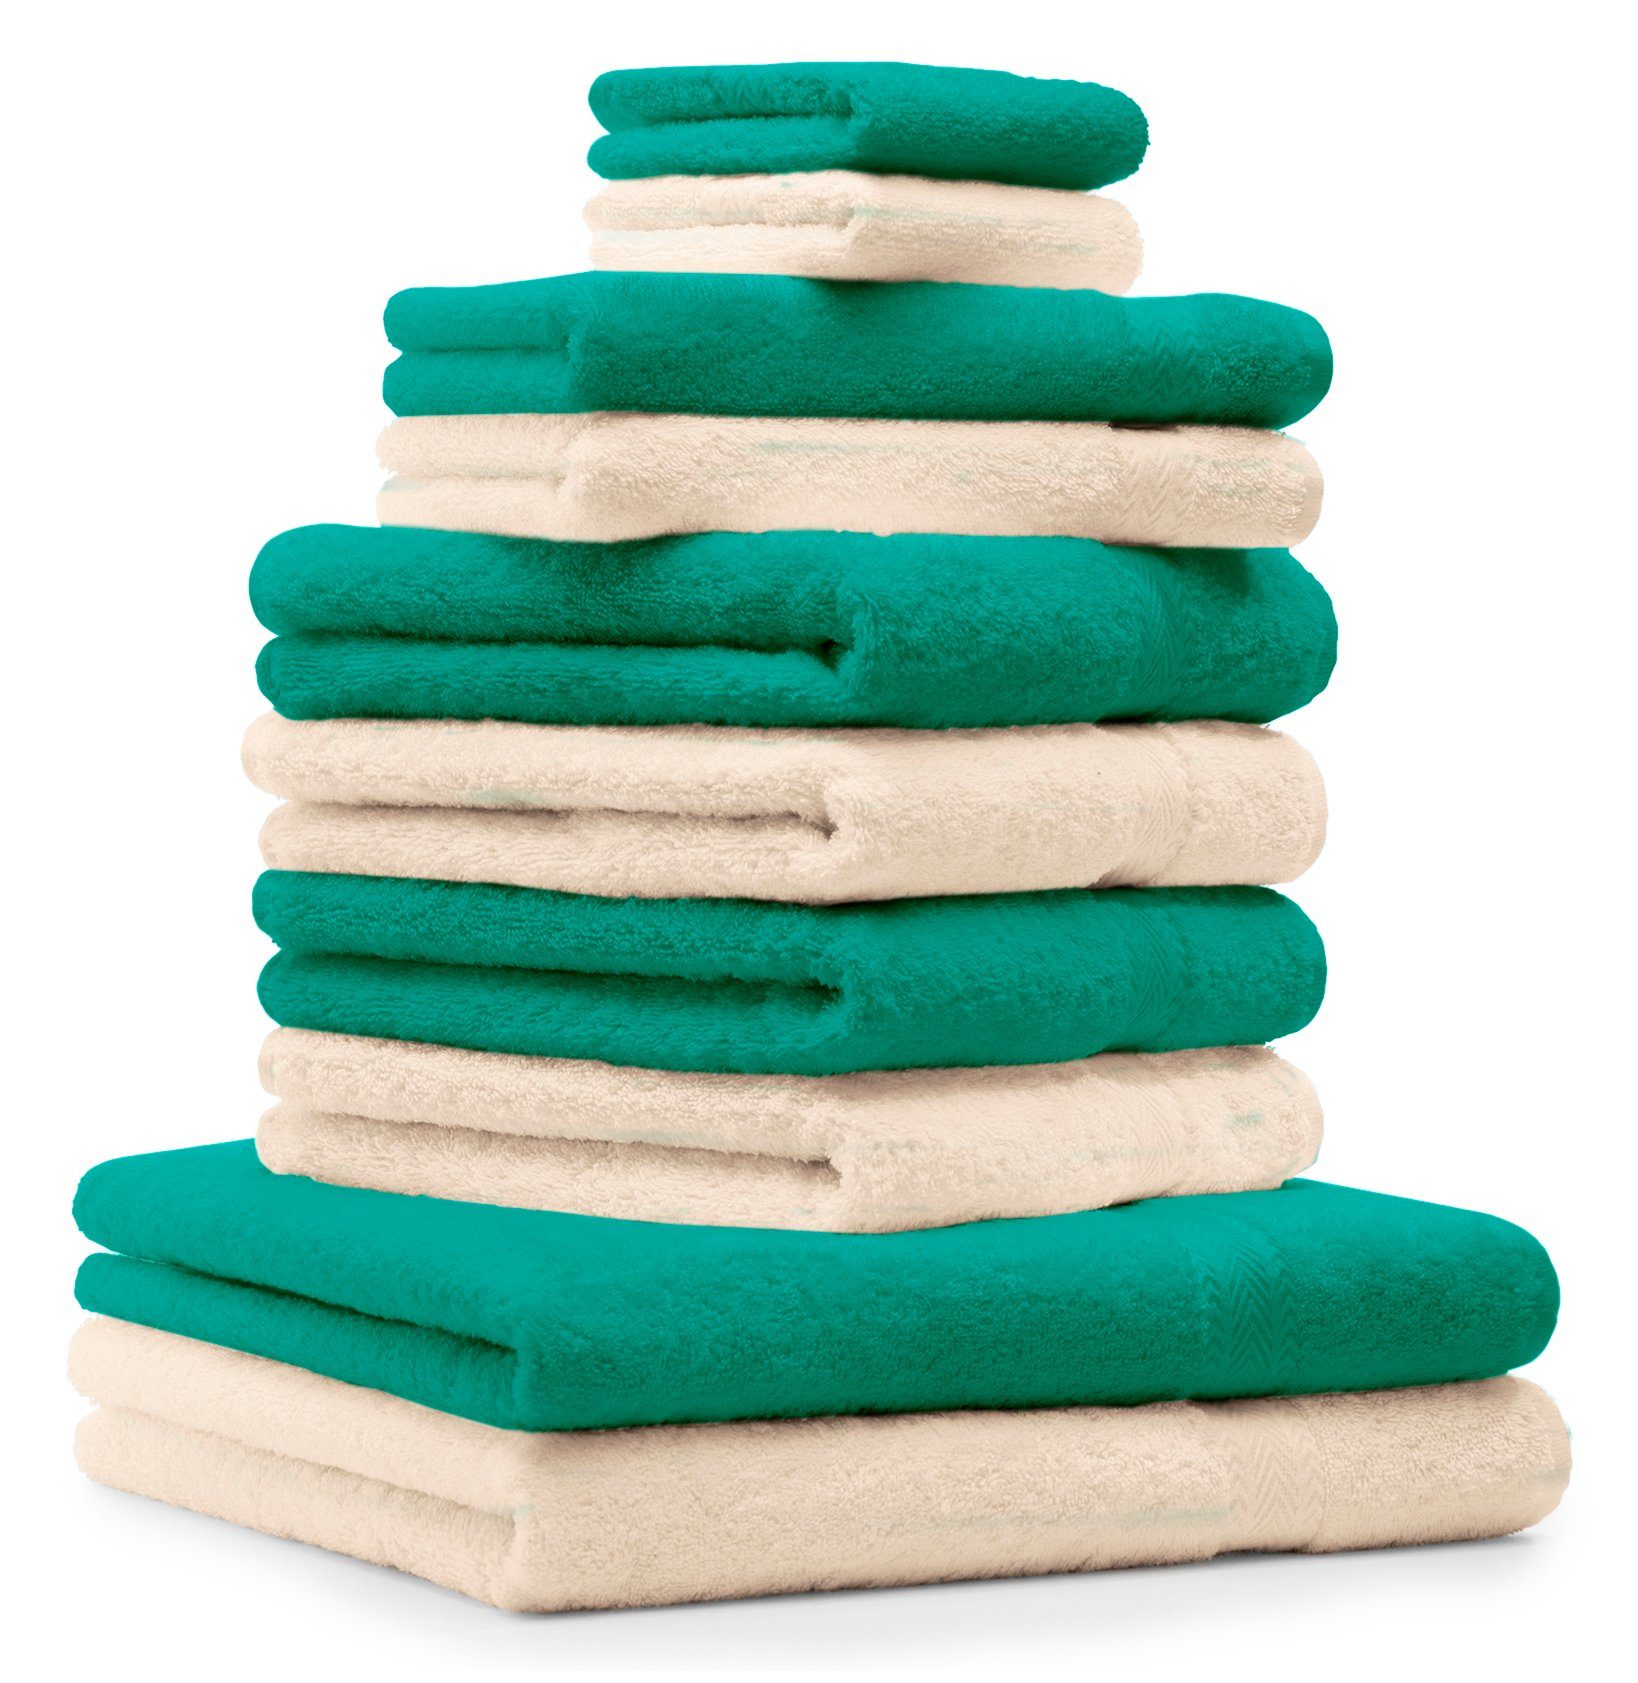 Betz Handtuch Set 10-TLG. Handtuch-Set Premium 100% Baumwolle 2 Duschtücher 4 Handtücher 2 Gästetücher 2 Waschhandschuhe Farbe Smaragd Grün & Beige, 100% Baumwolle